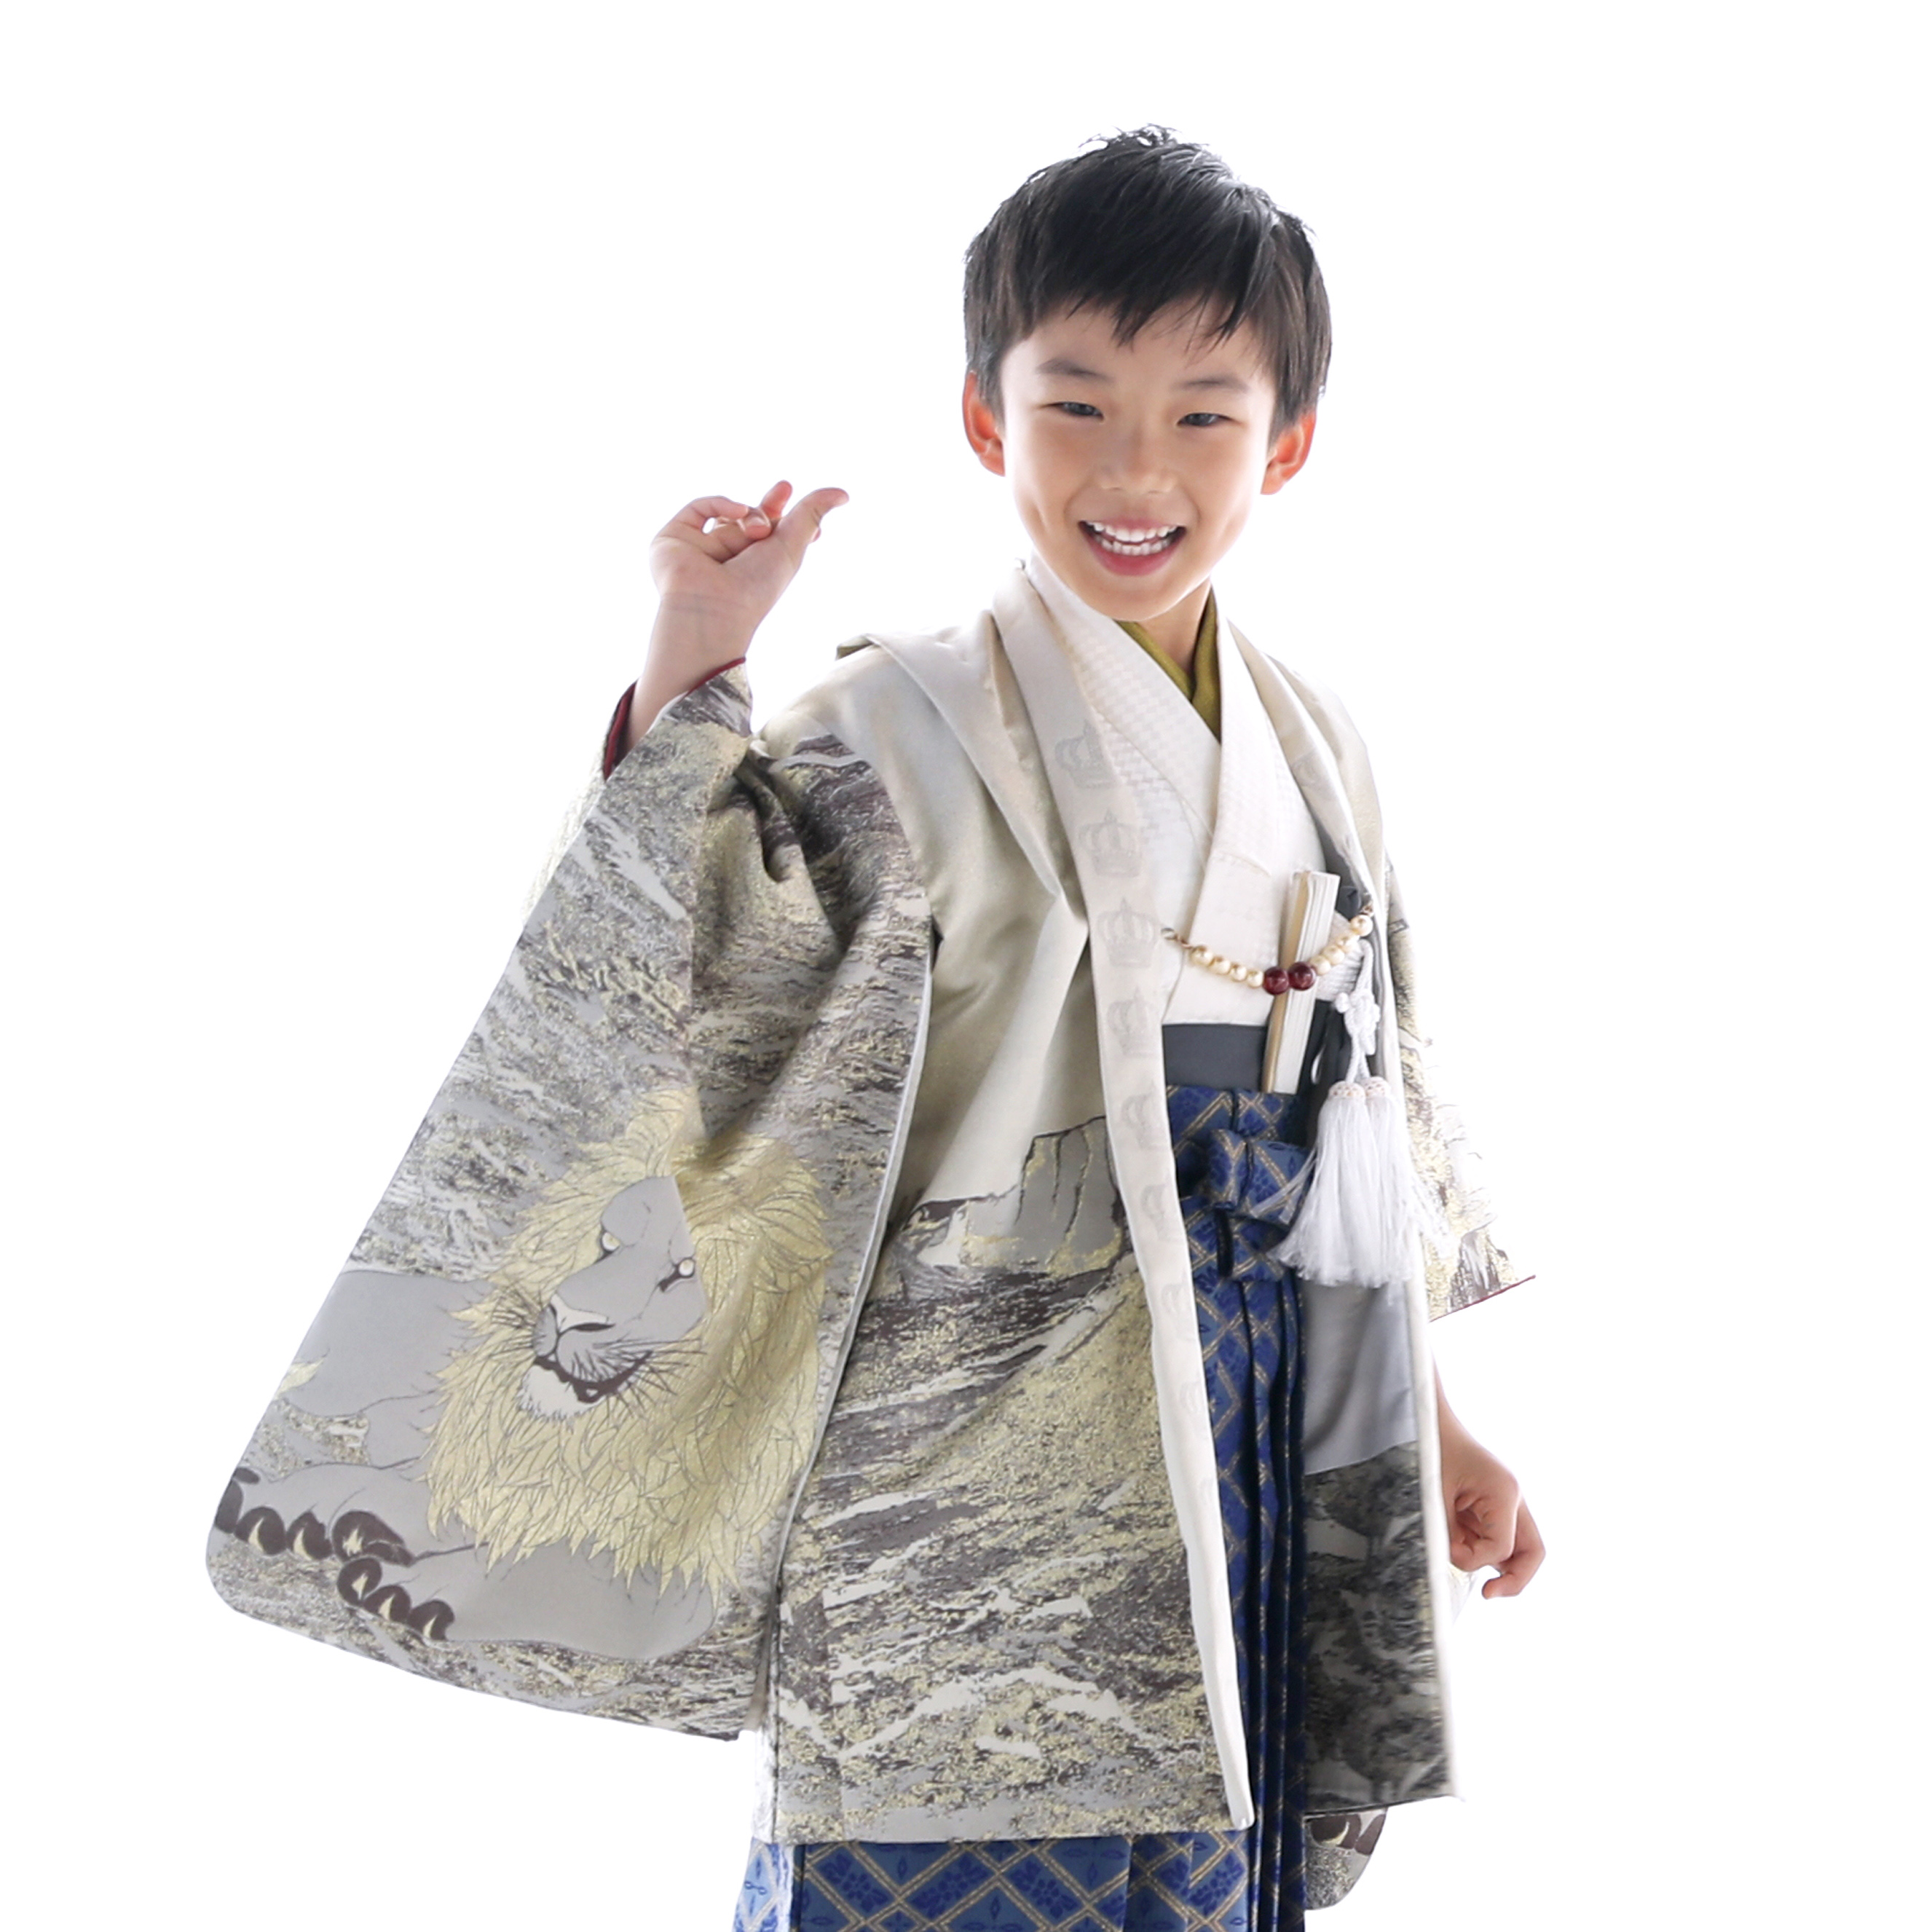 お客様ご着用写真。襦袢や袴の組み合わせはレンタル品と異なります。